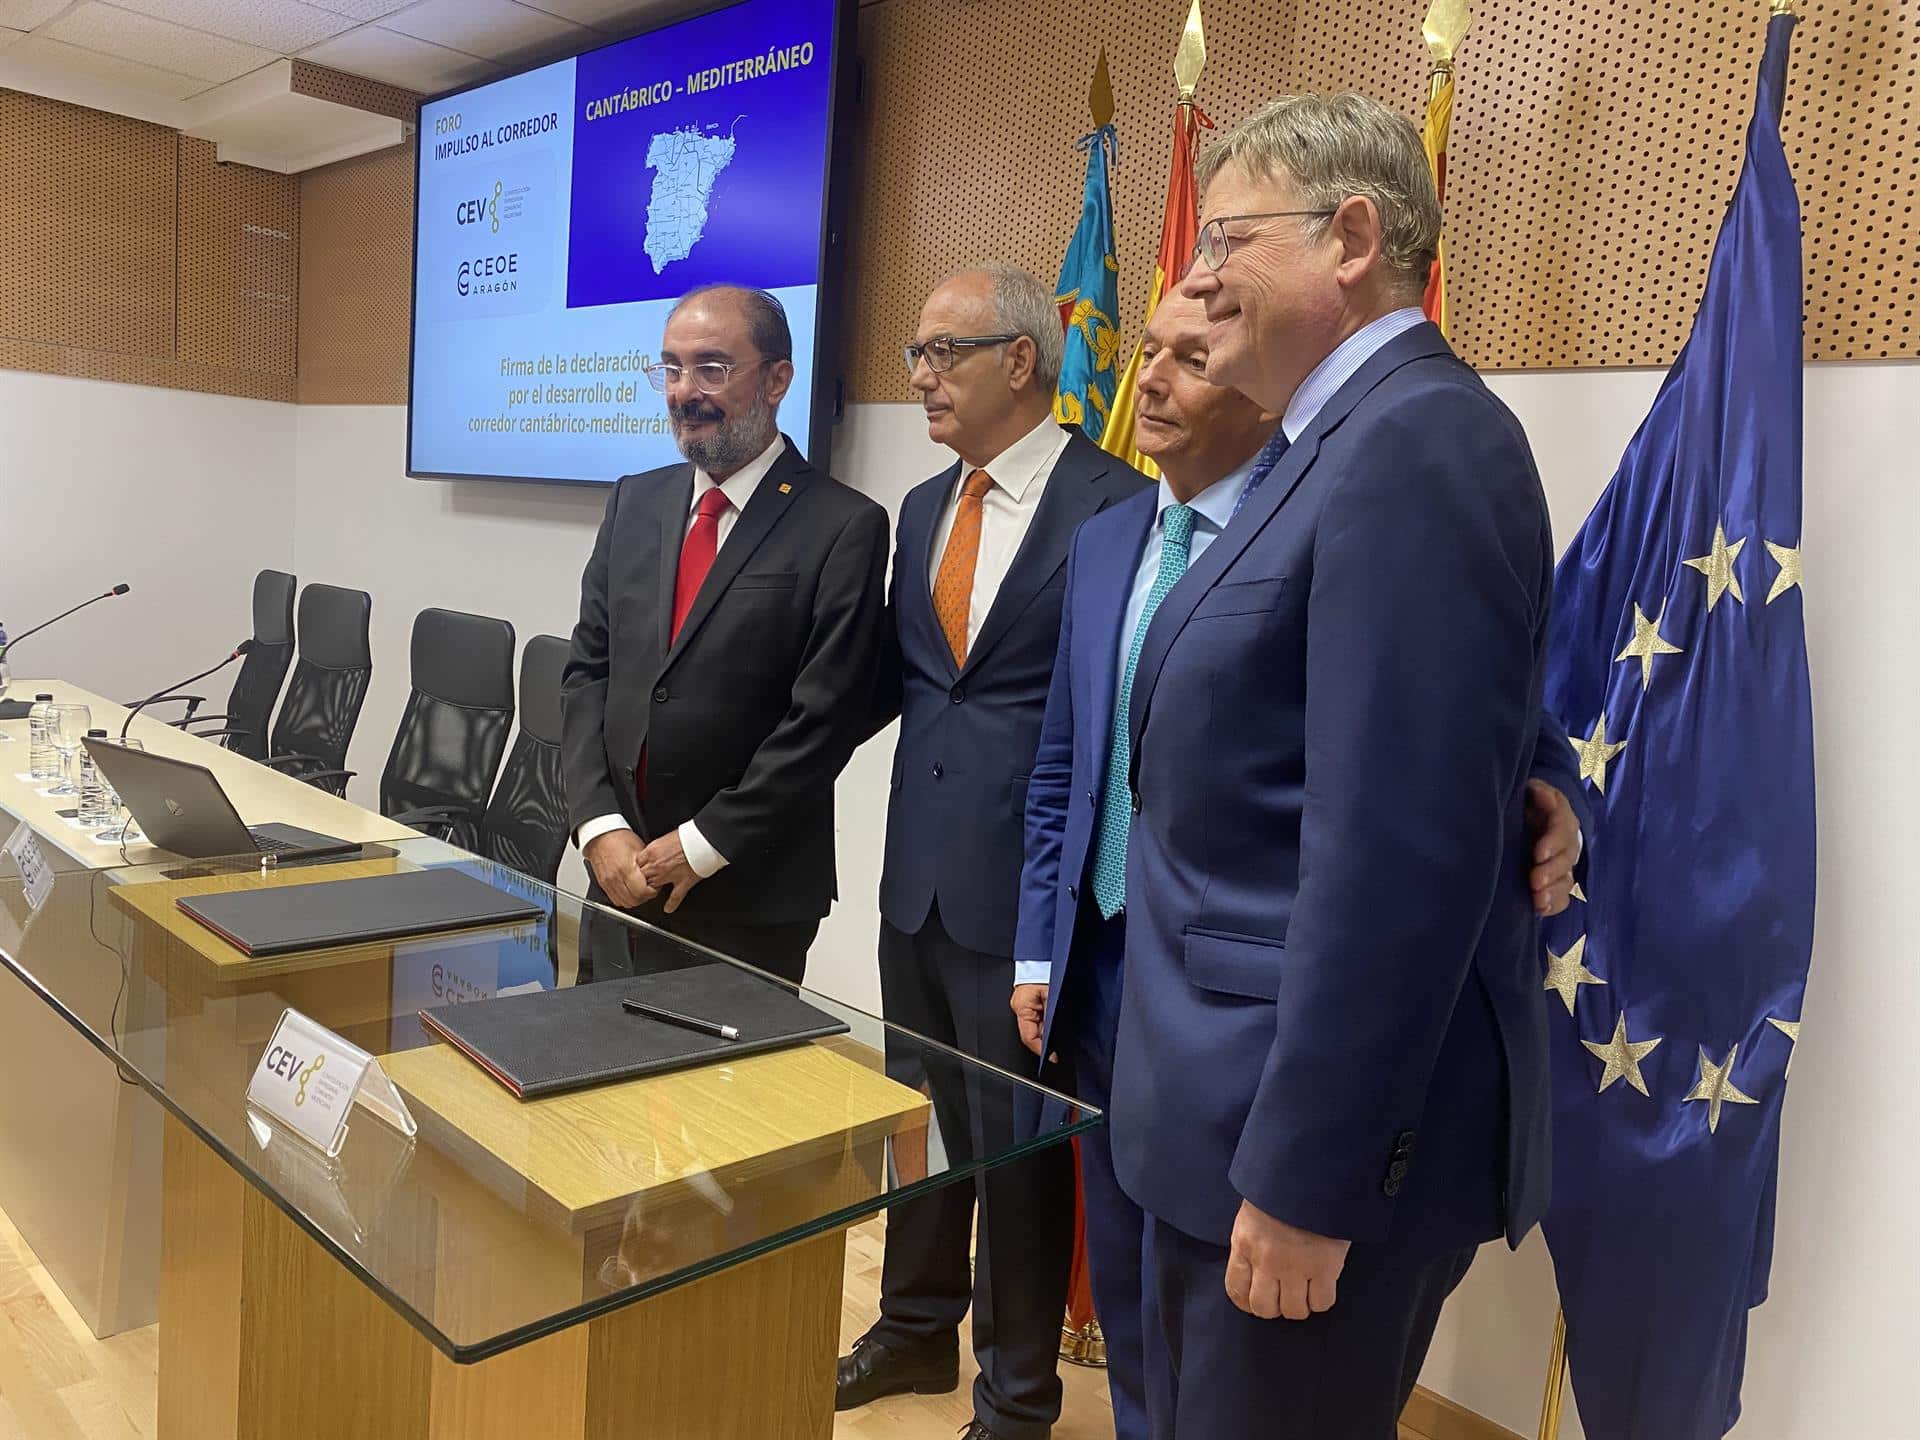 Los gobiernos y las patronales de Aragón y la Comunitat Valenciana urgen a terminar el Corredor Cantábrico-Mediterráneo